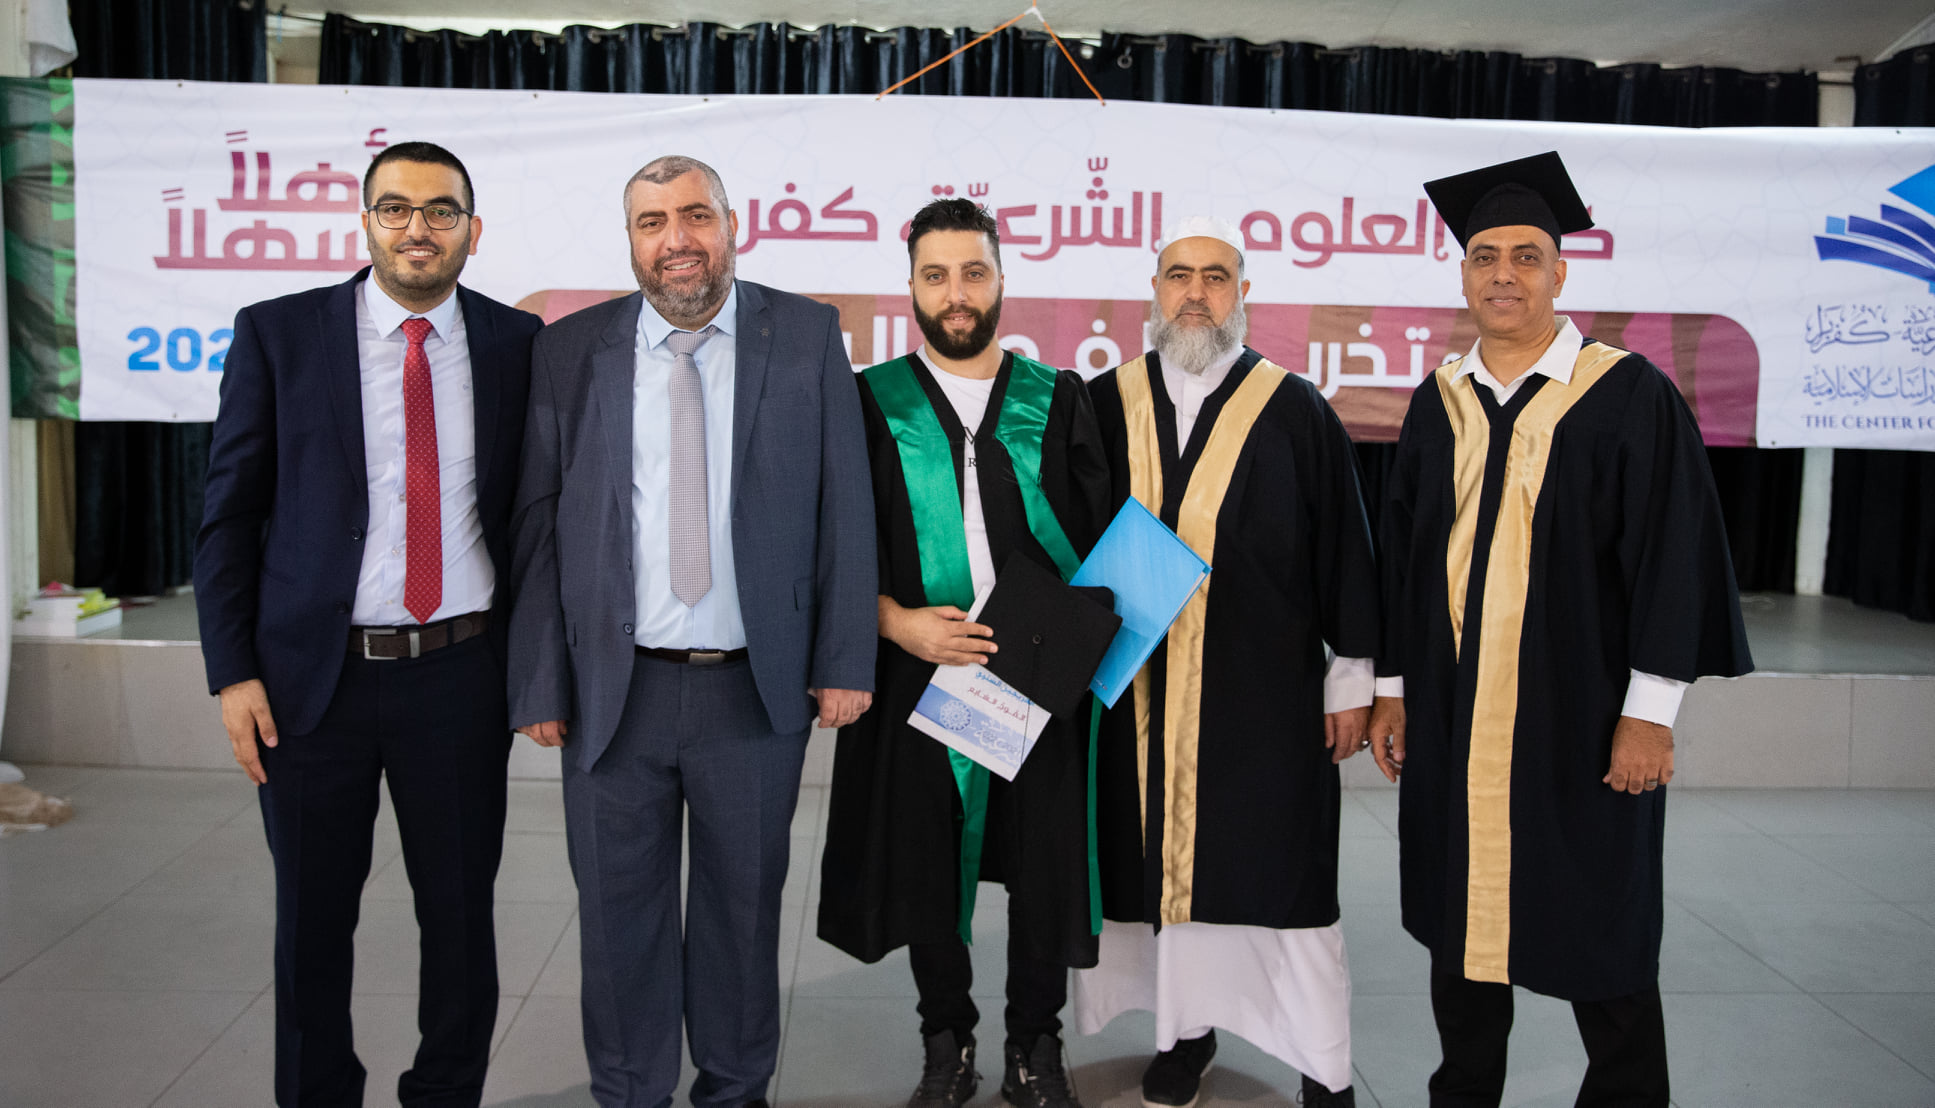 كليةُ العلوم الشرعية في كفربرا تحتفل بتخريج الفوج السابع من طلاب دبلوم الشريعة الإسلامية